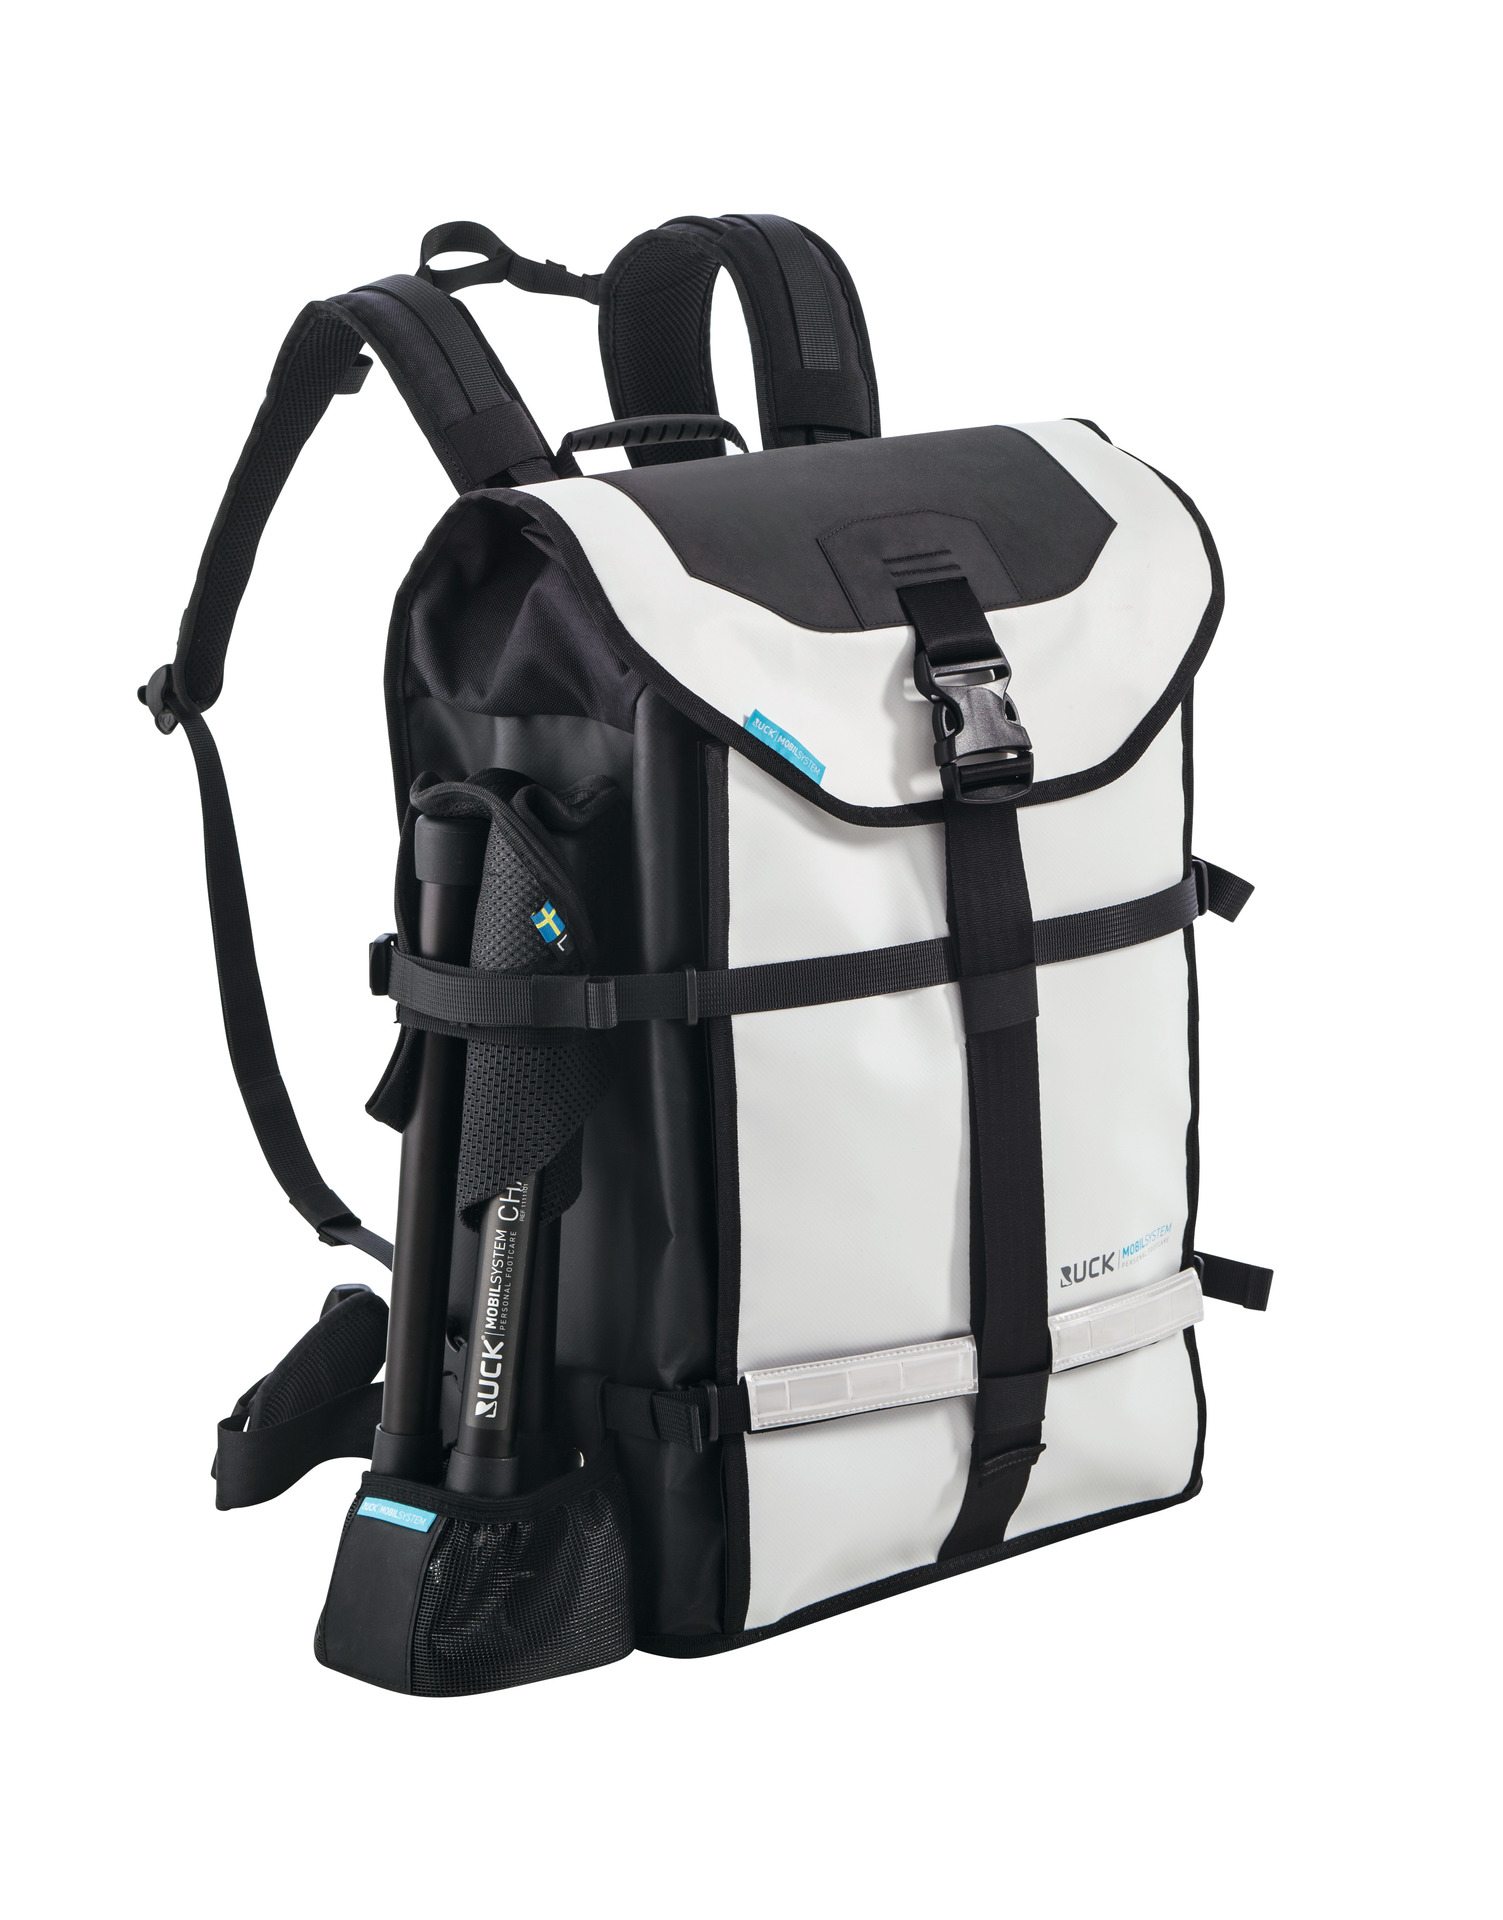 Backpack μεταφοράς φορητού εξοπλισμού Podolog Nova 3/3S, Eco/One